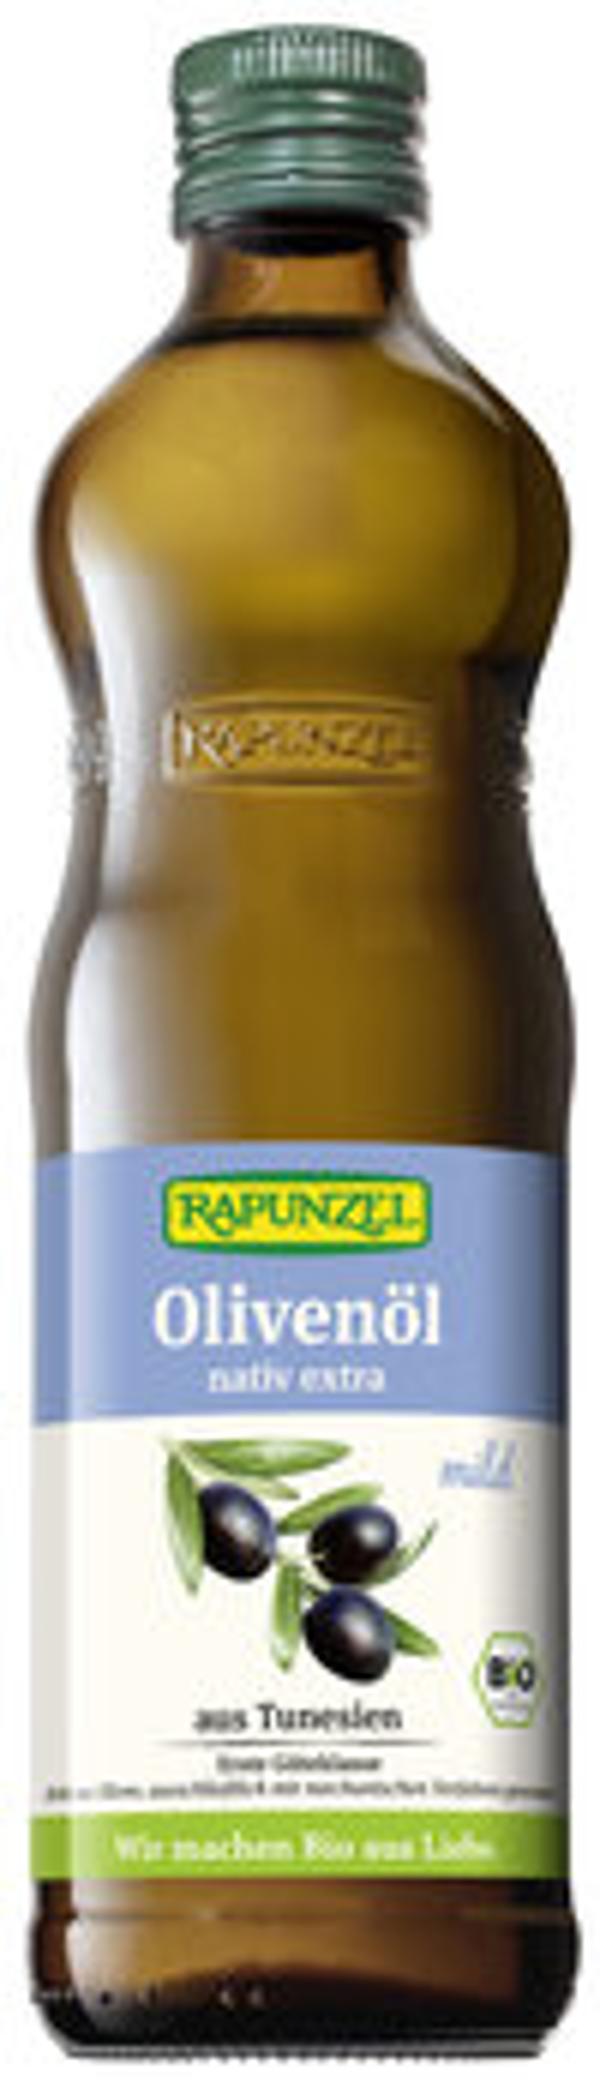 Produktfoto zu Rapunzel Olivenöl mild, nativ extra 0,5l